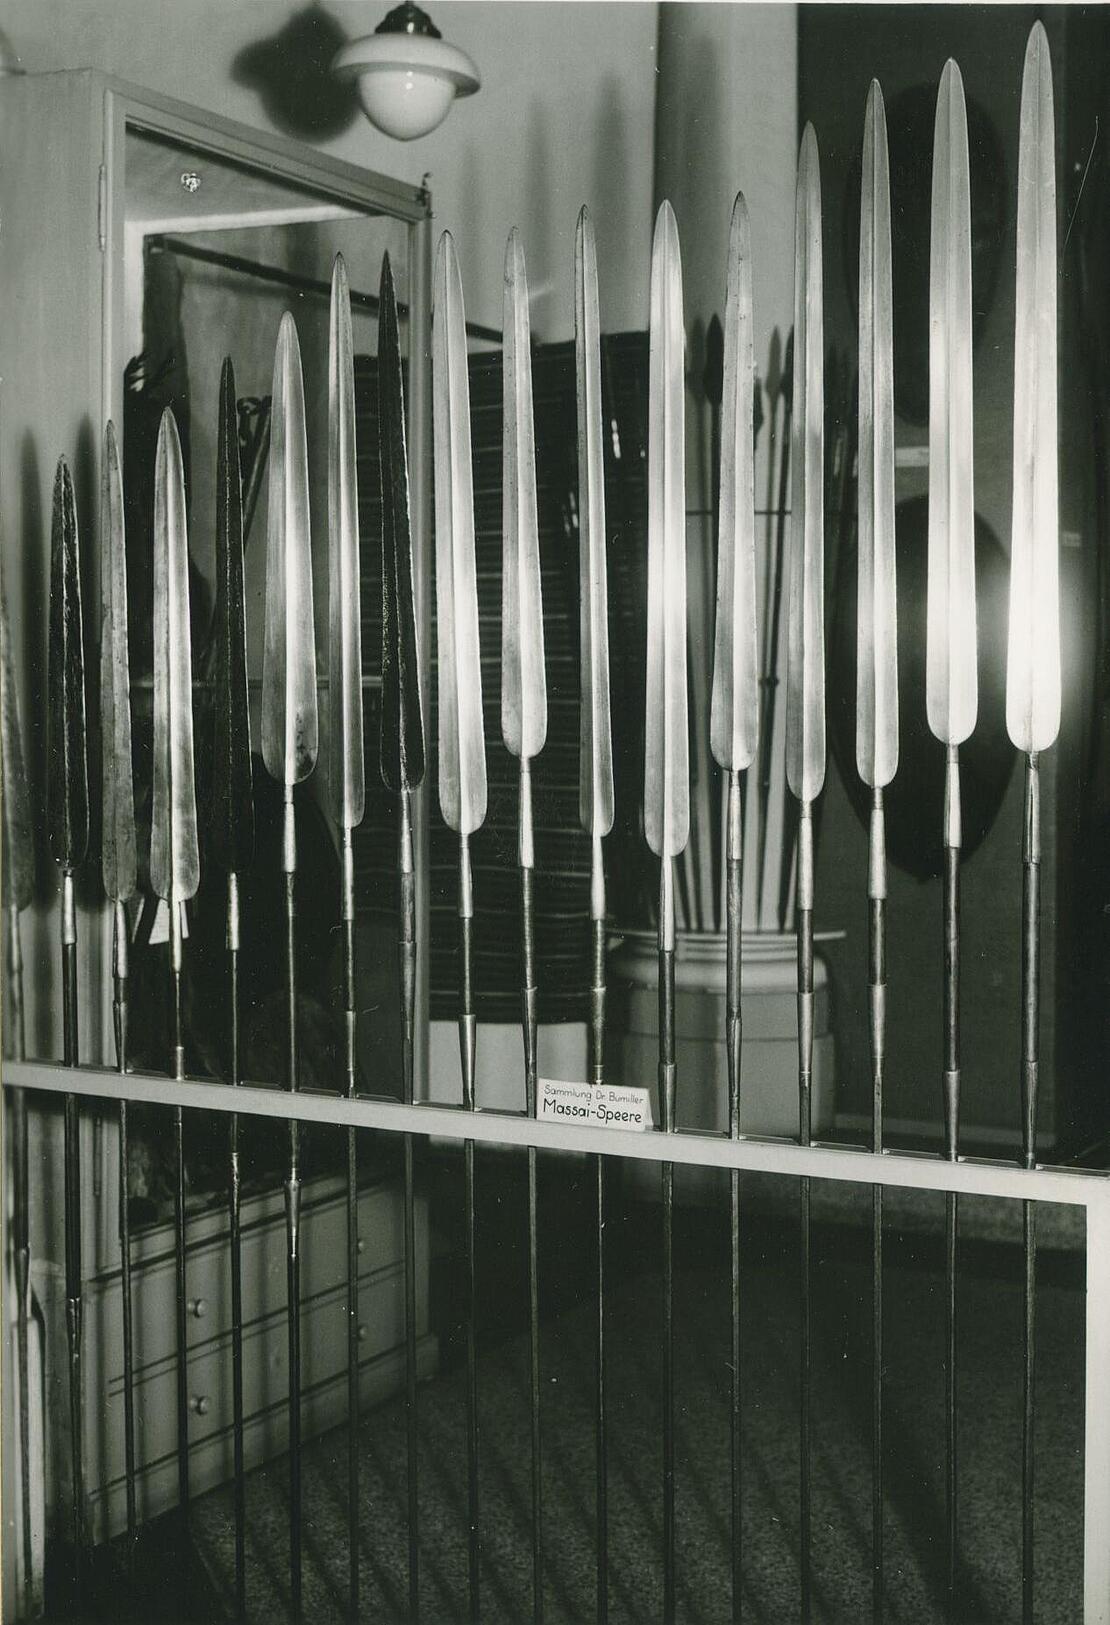 Schwarz-weiß-Bild zeigt aufgereihte Speere in einer Ausstellung